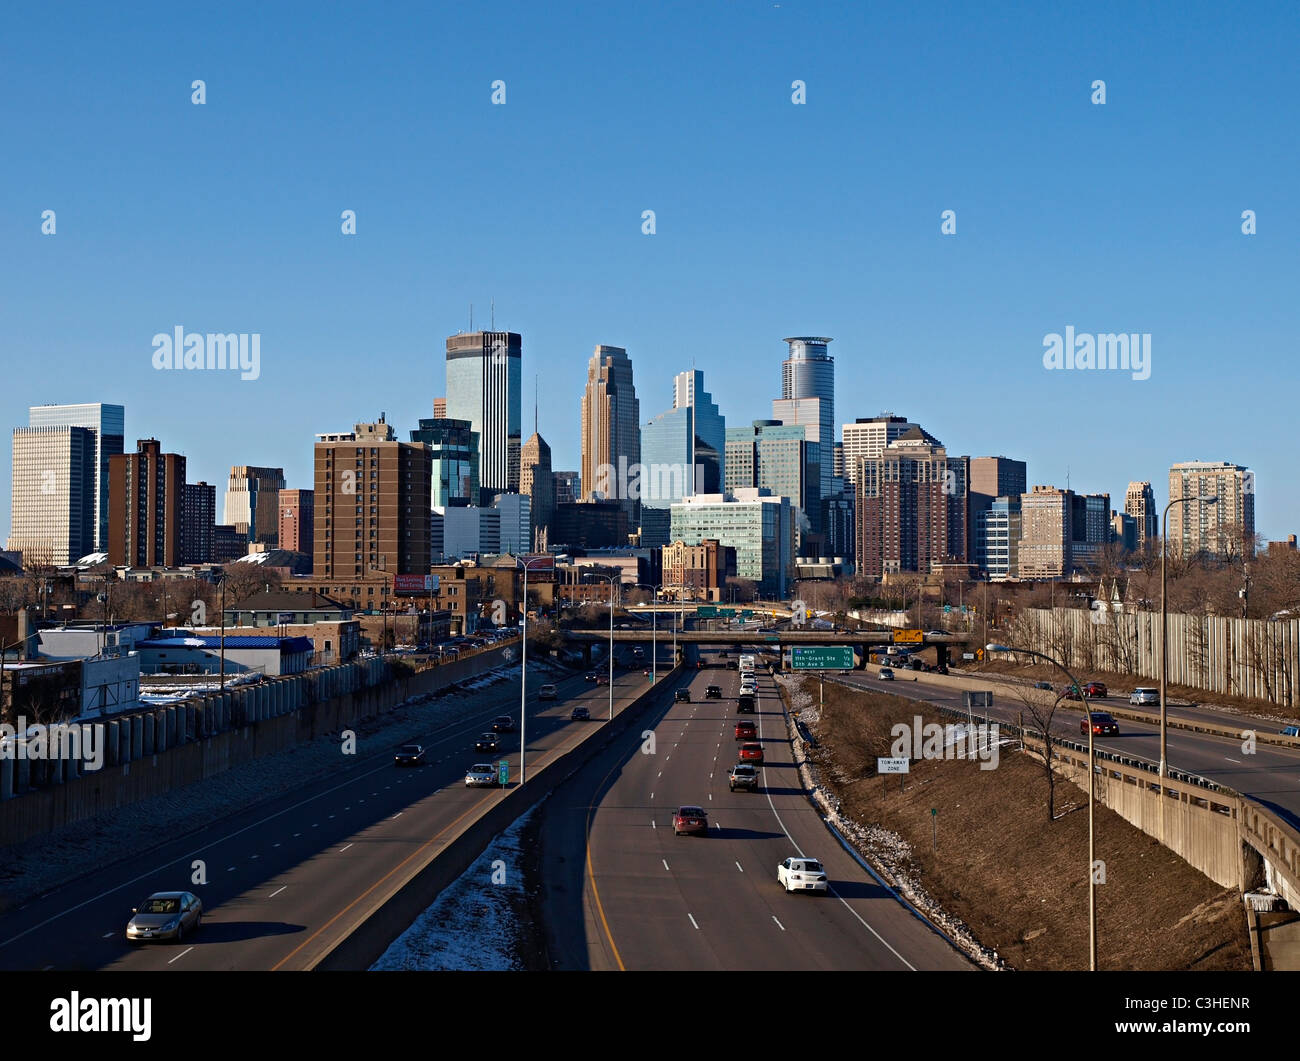 Ansicht von im Stadtzentrum gelegenem Minneapolis aus der 24th Street Fußgängerbrücke über I-35W - März 2011 Stockfoto